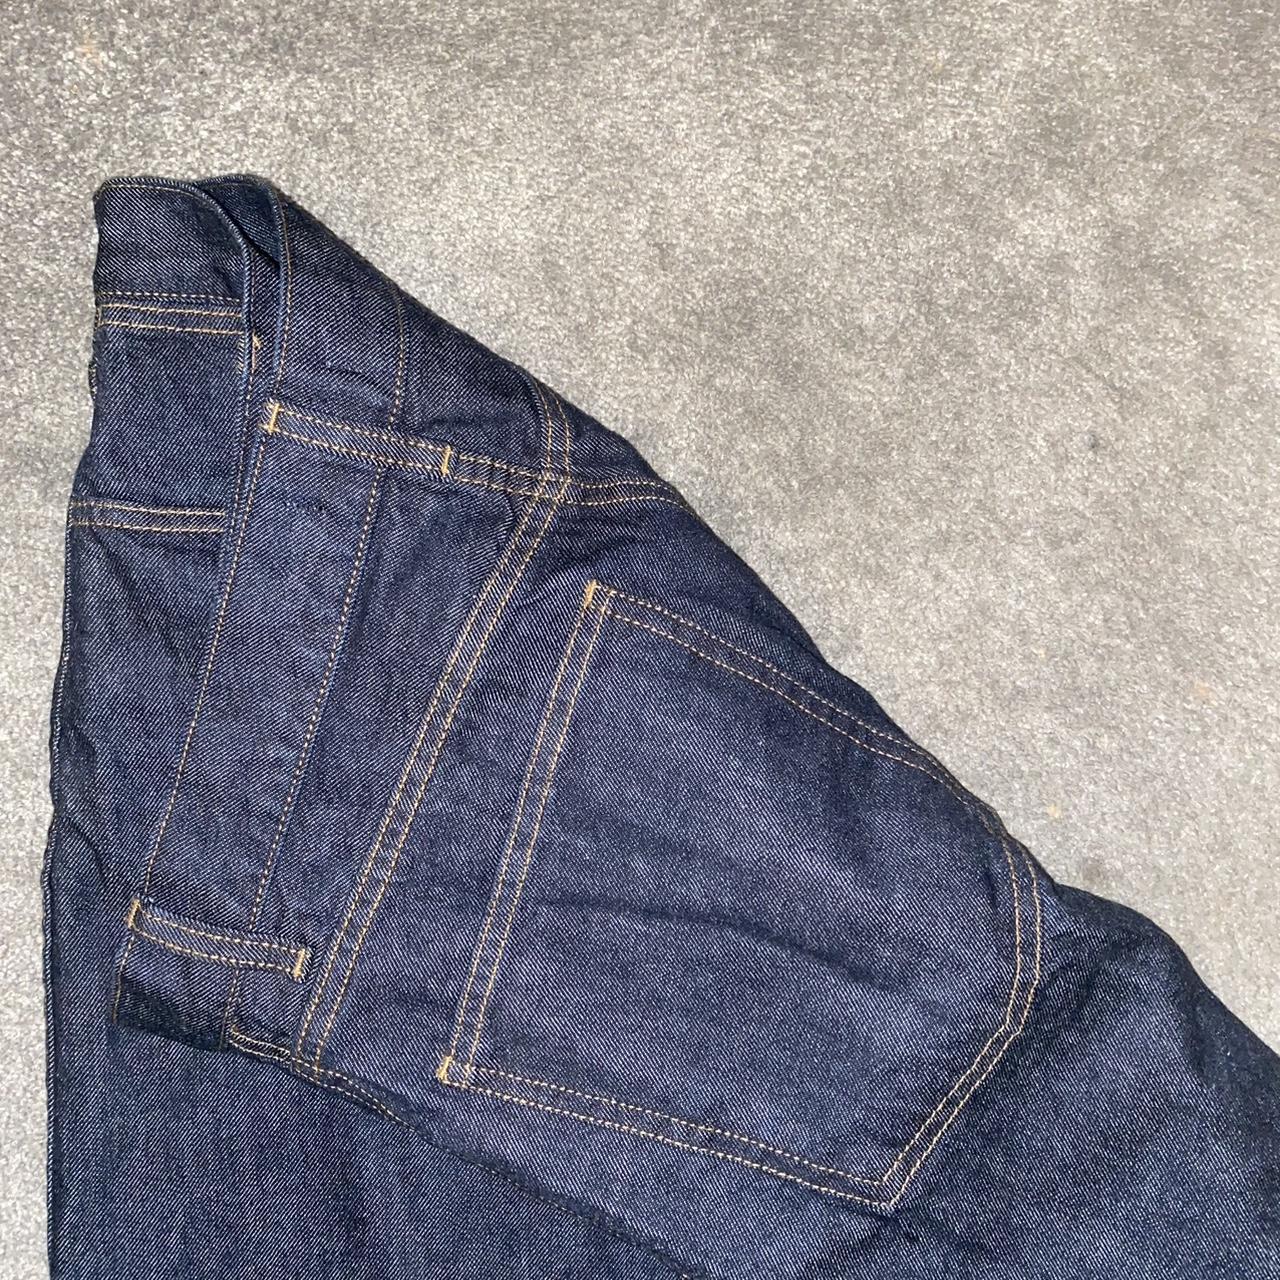 Navy Denim Stitch Detail Wide Leg Jeans Barely worn... - Depop